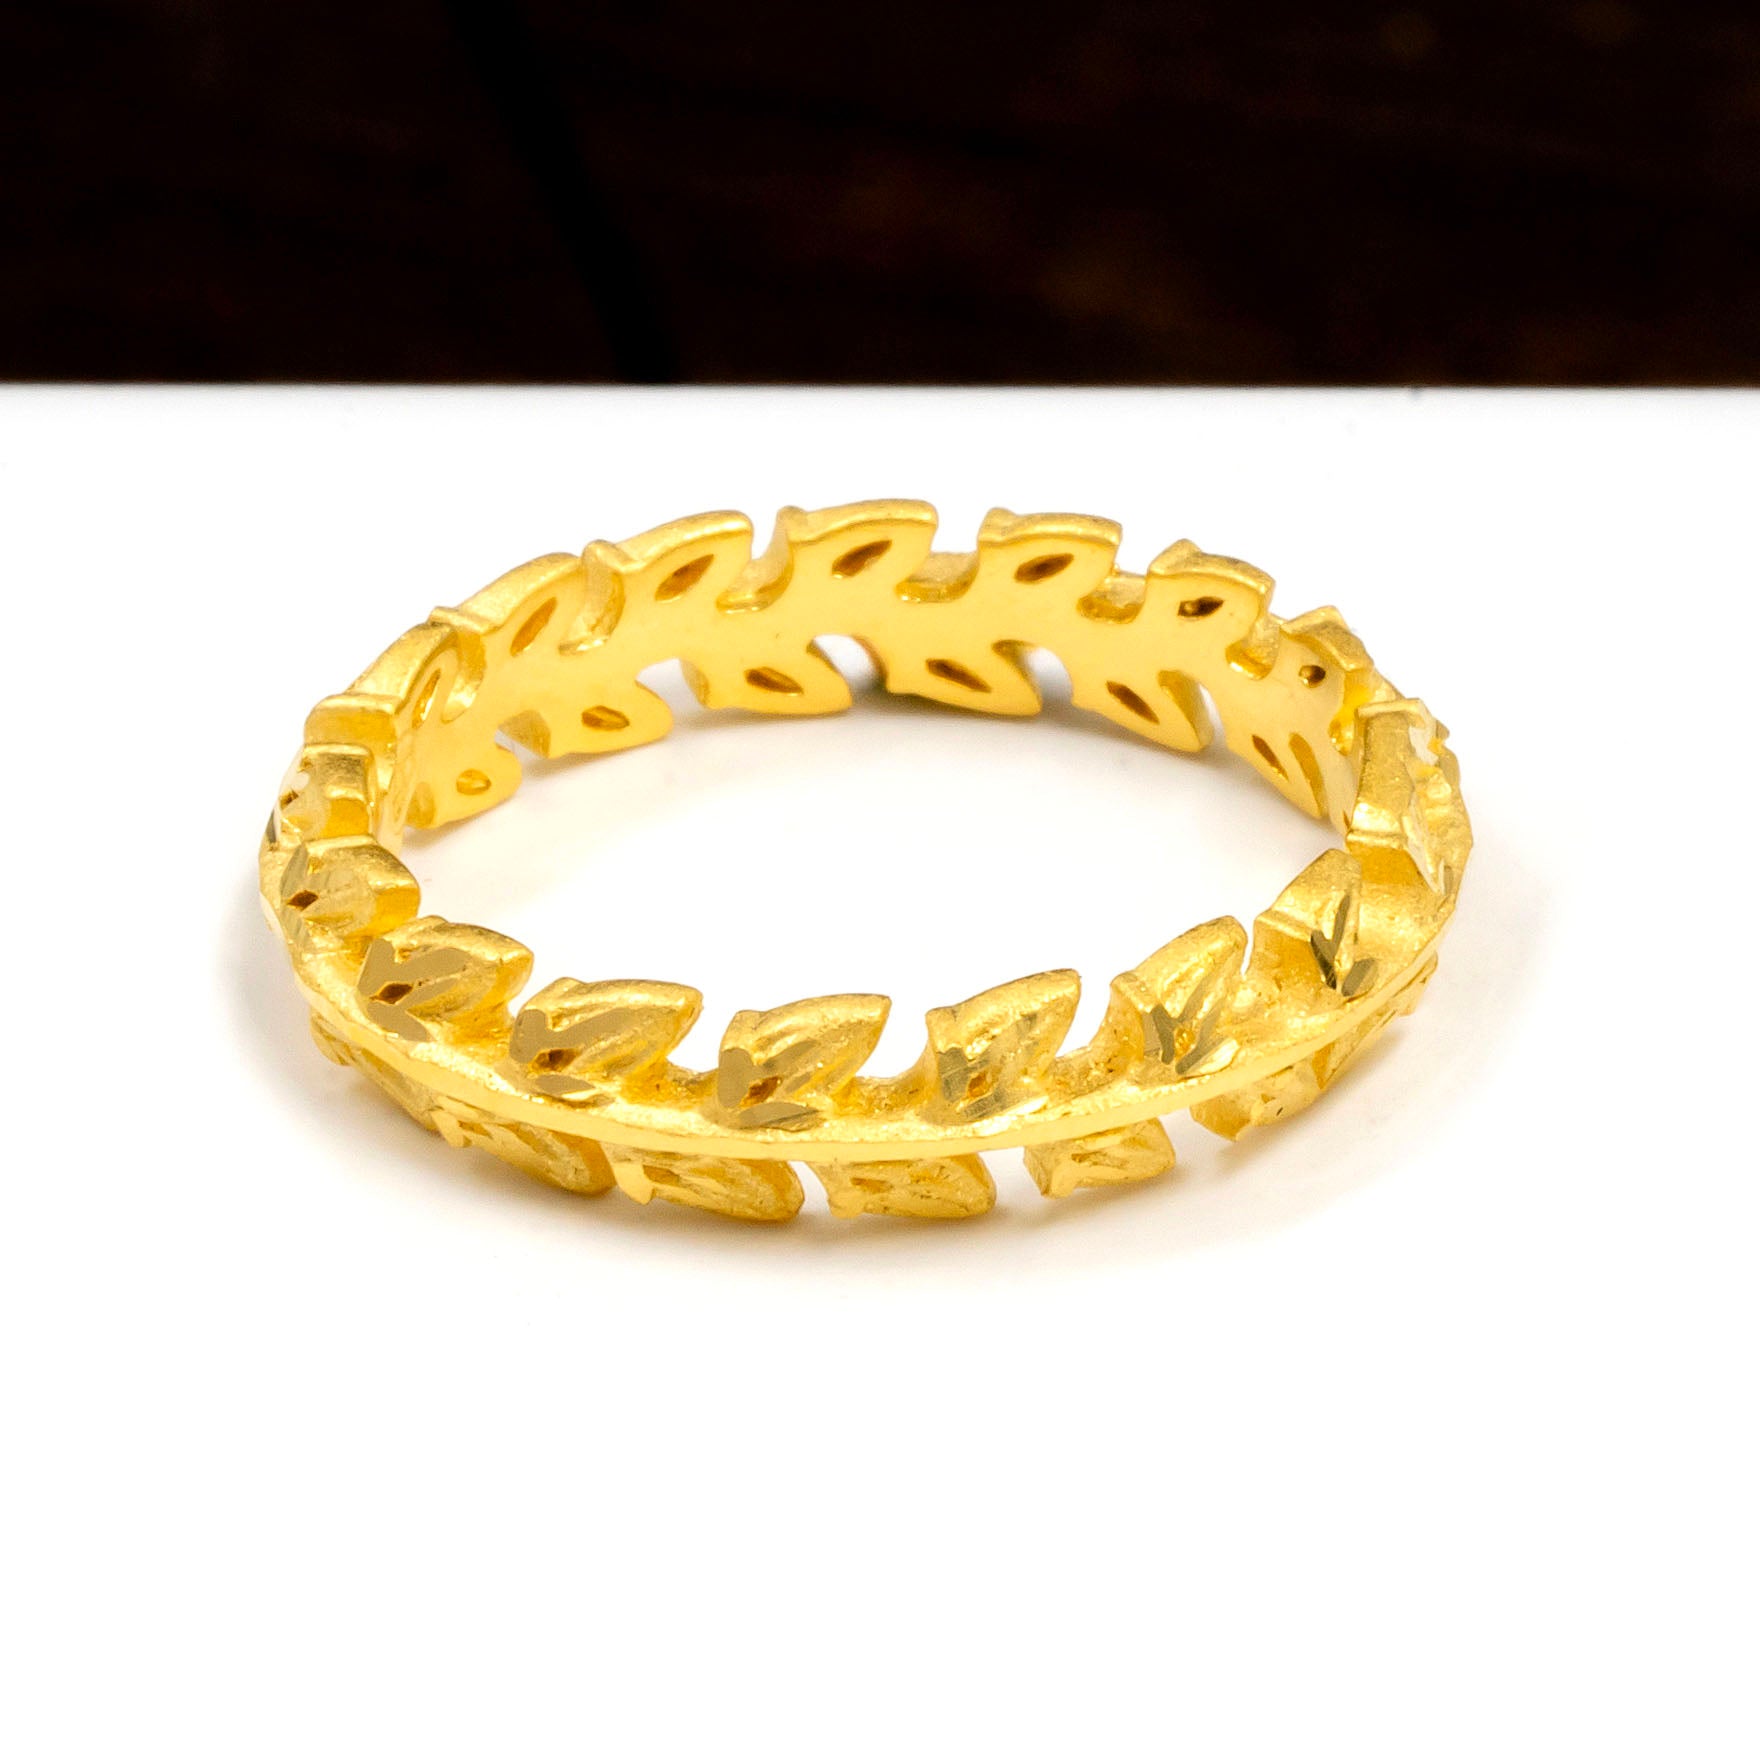 Golden Ring PGR55-14-021